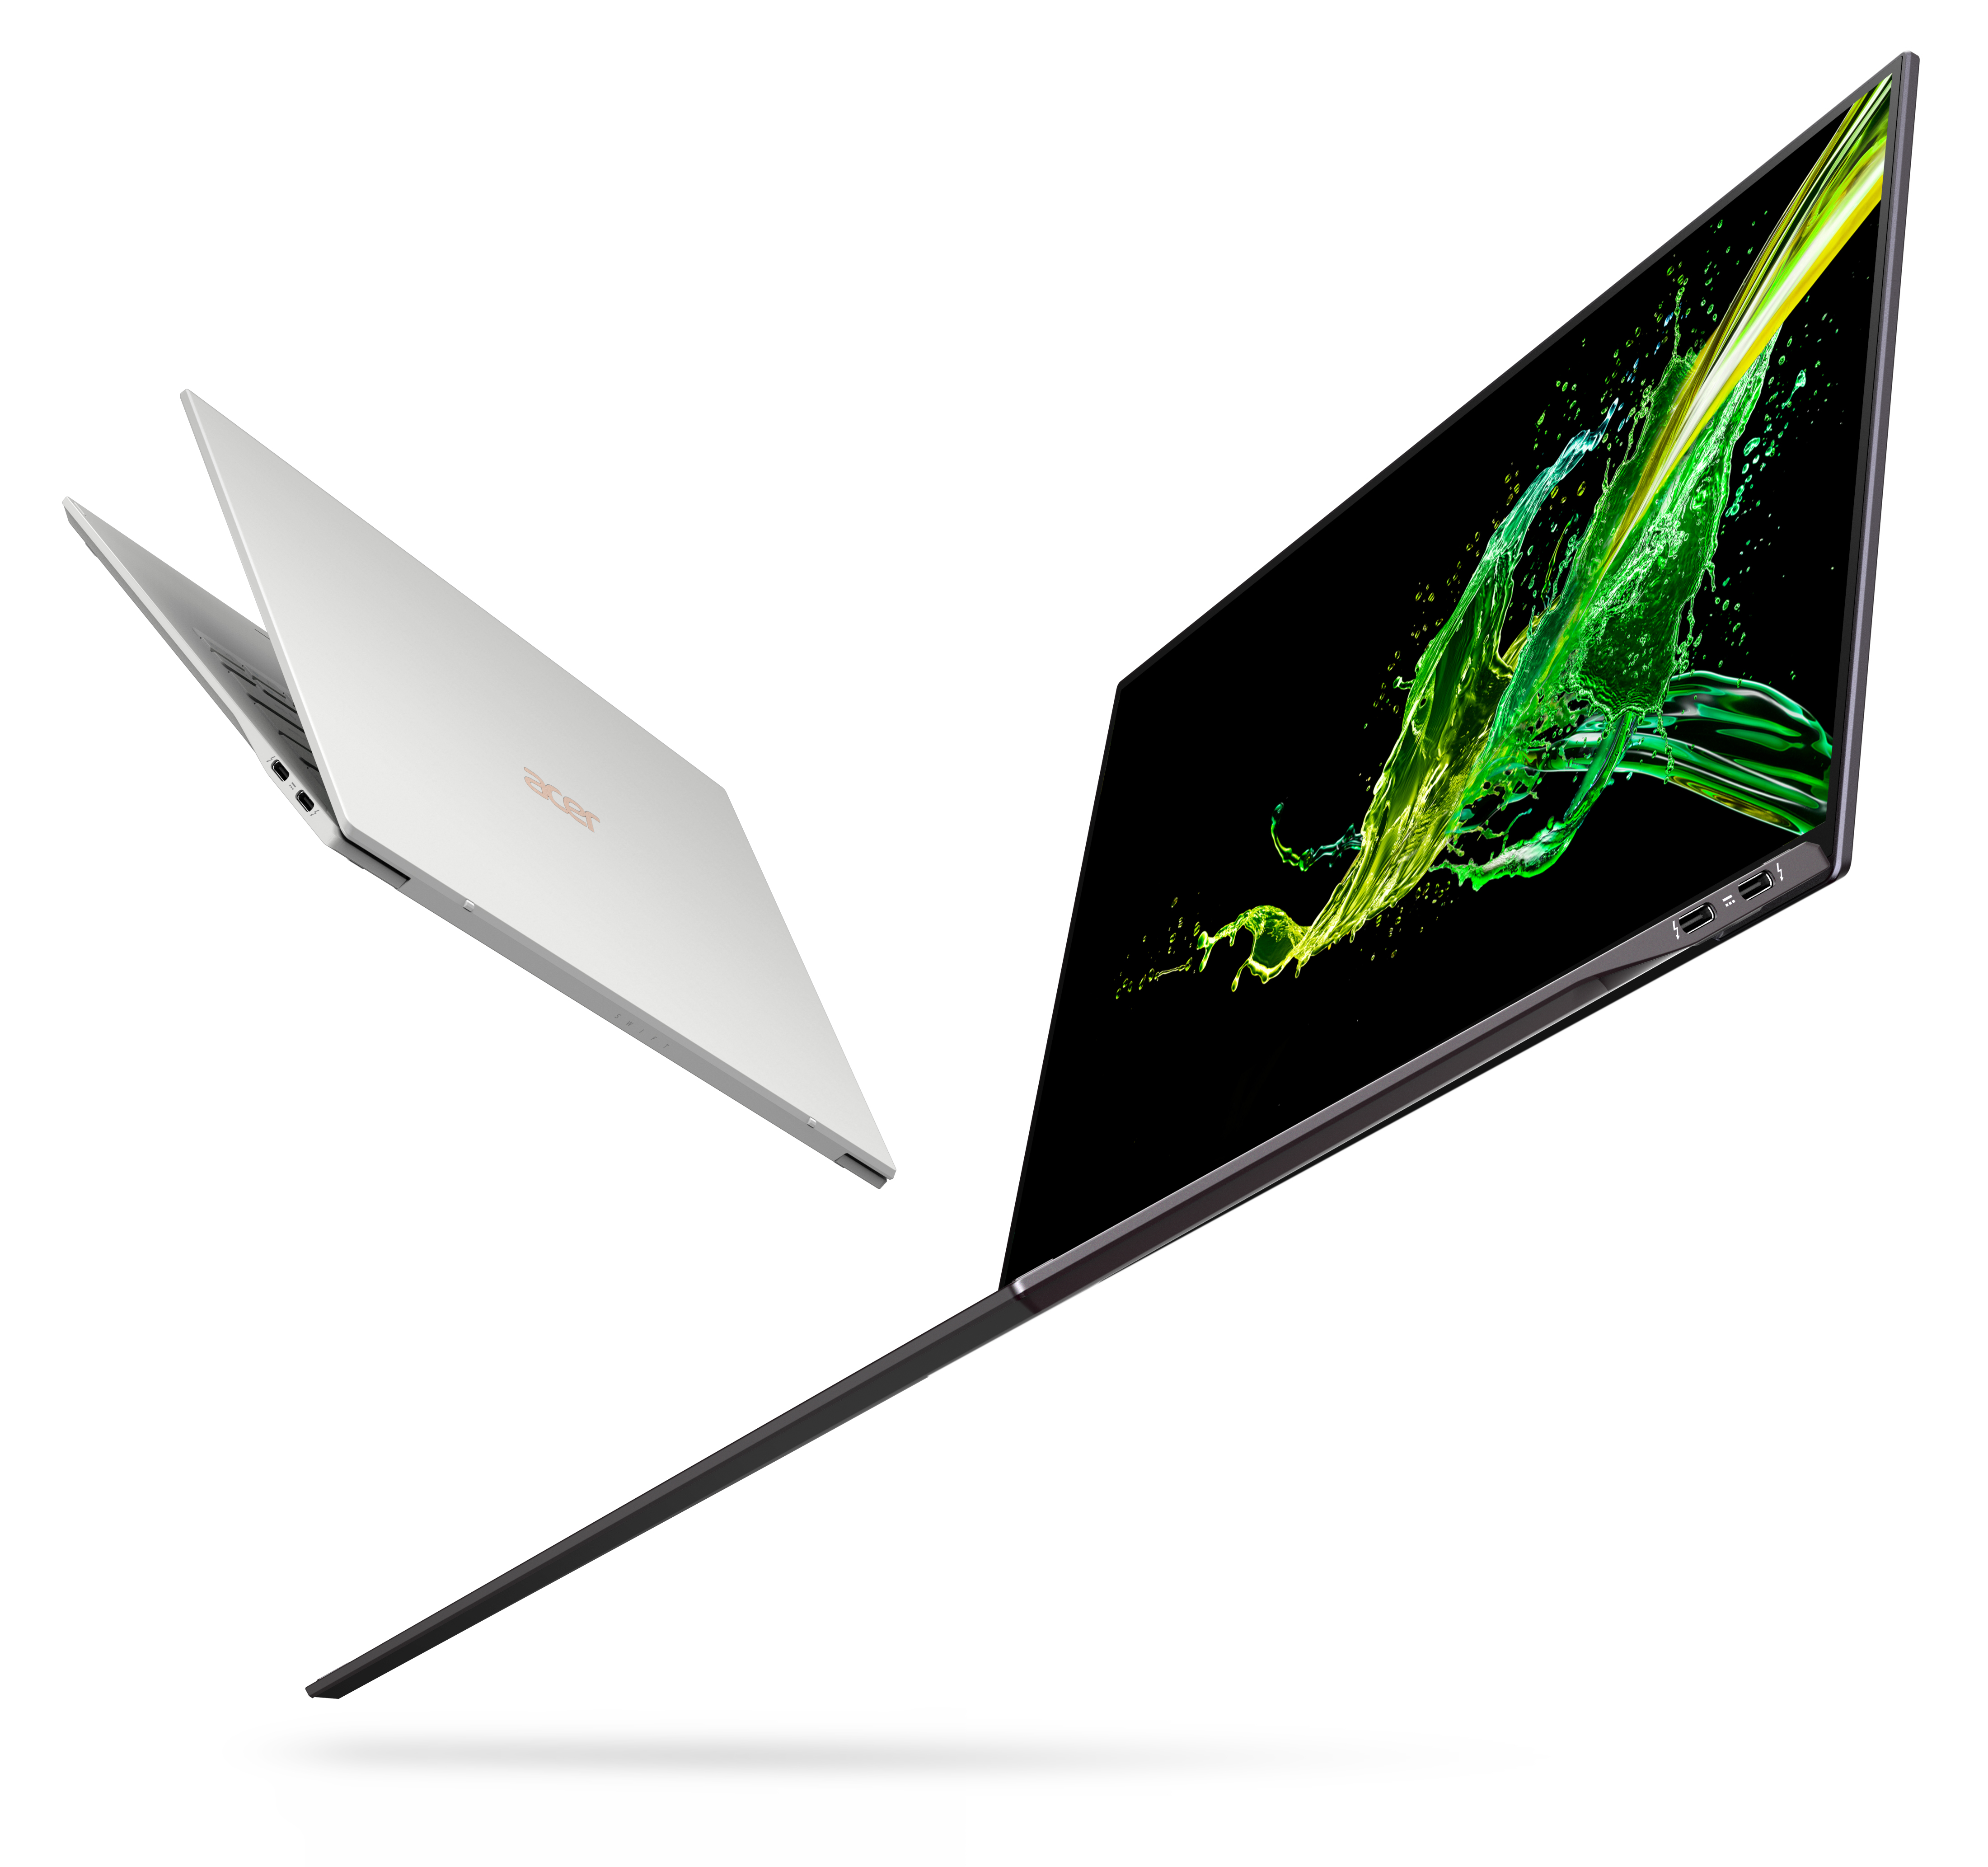 Noul Acer Swift 7 cu design compact și un incredibil raport între ecran și carcasă